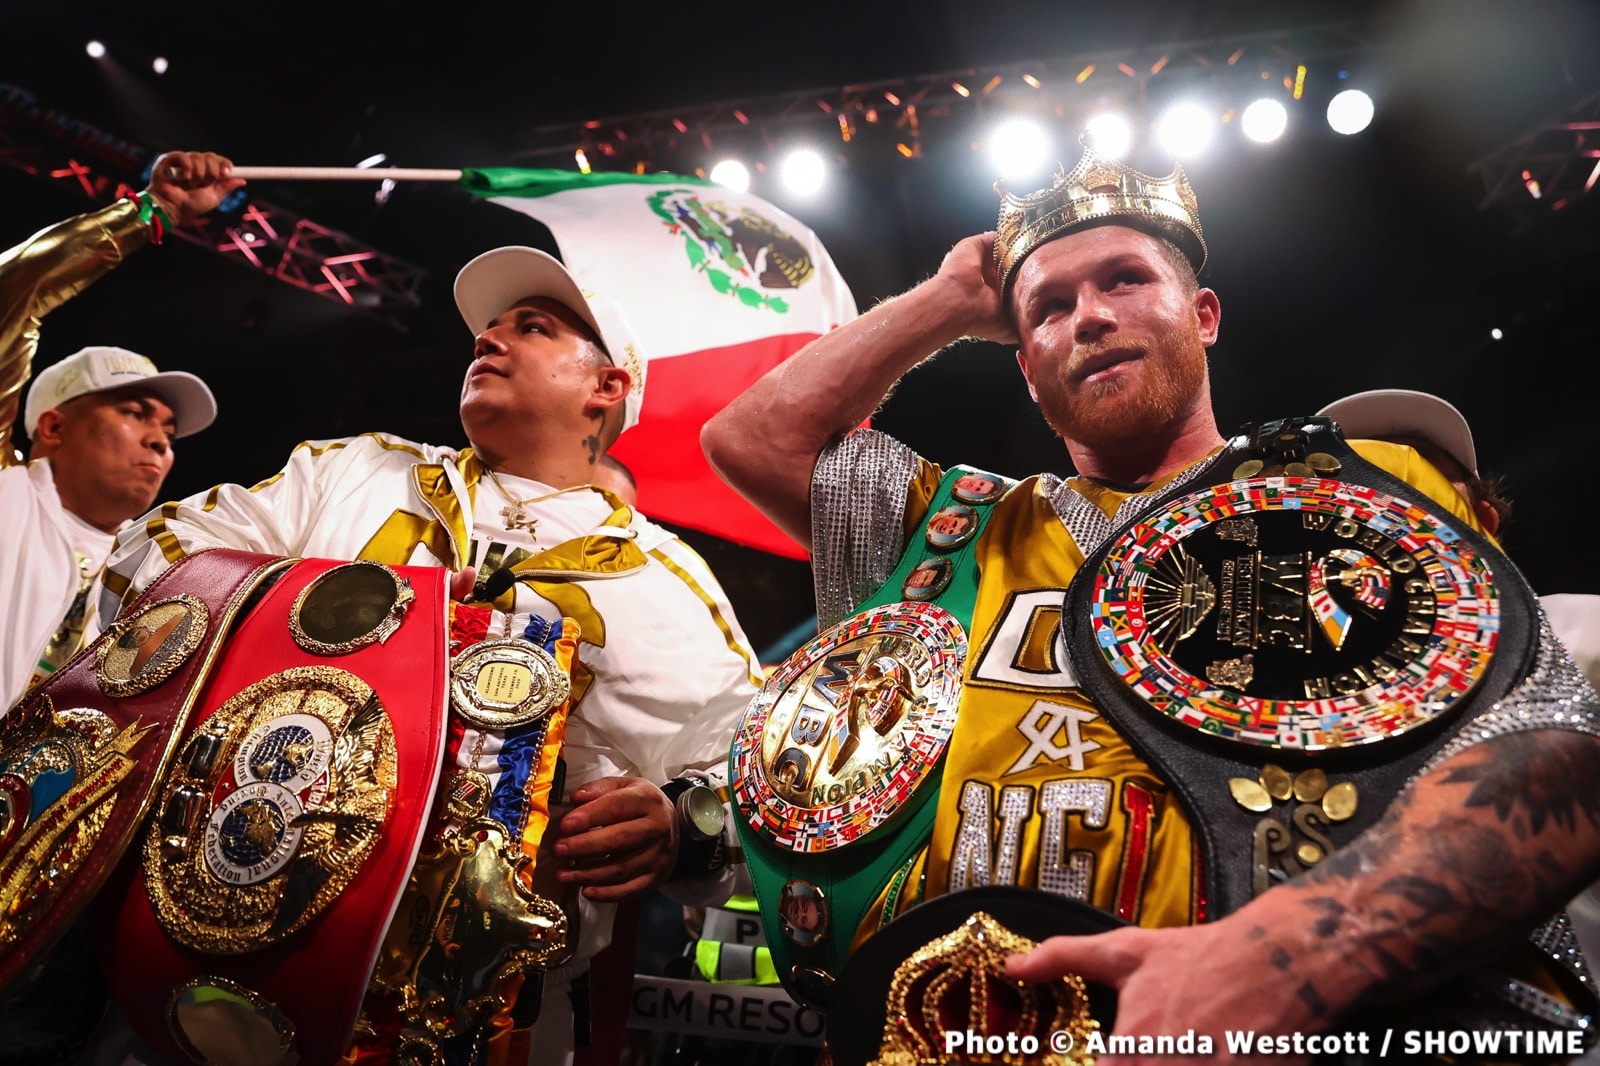 Oscar De La Hoya boxing image / photo